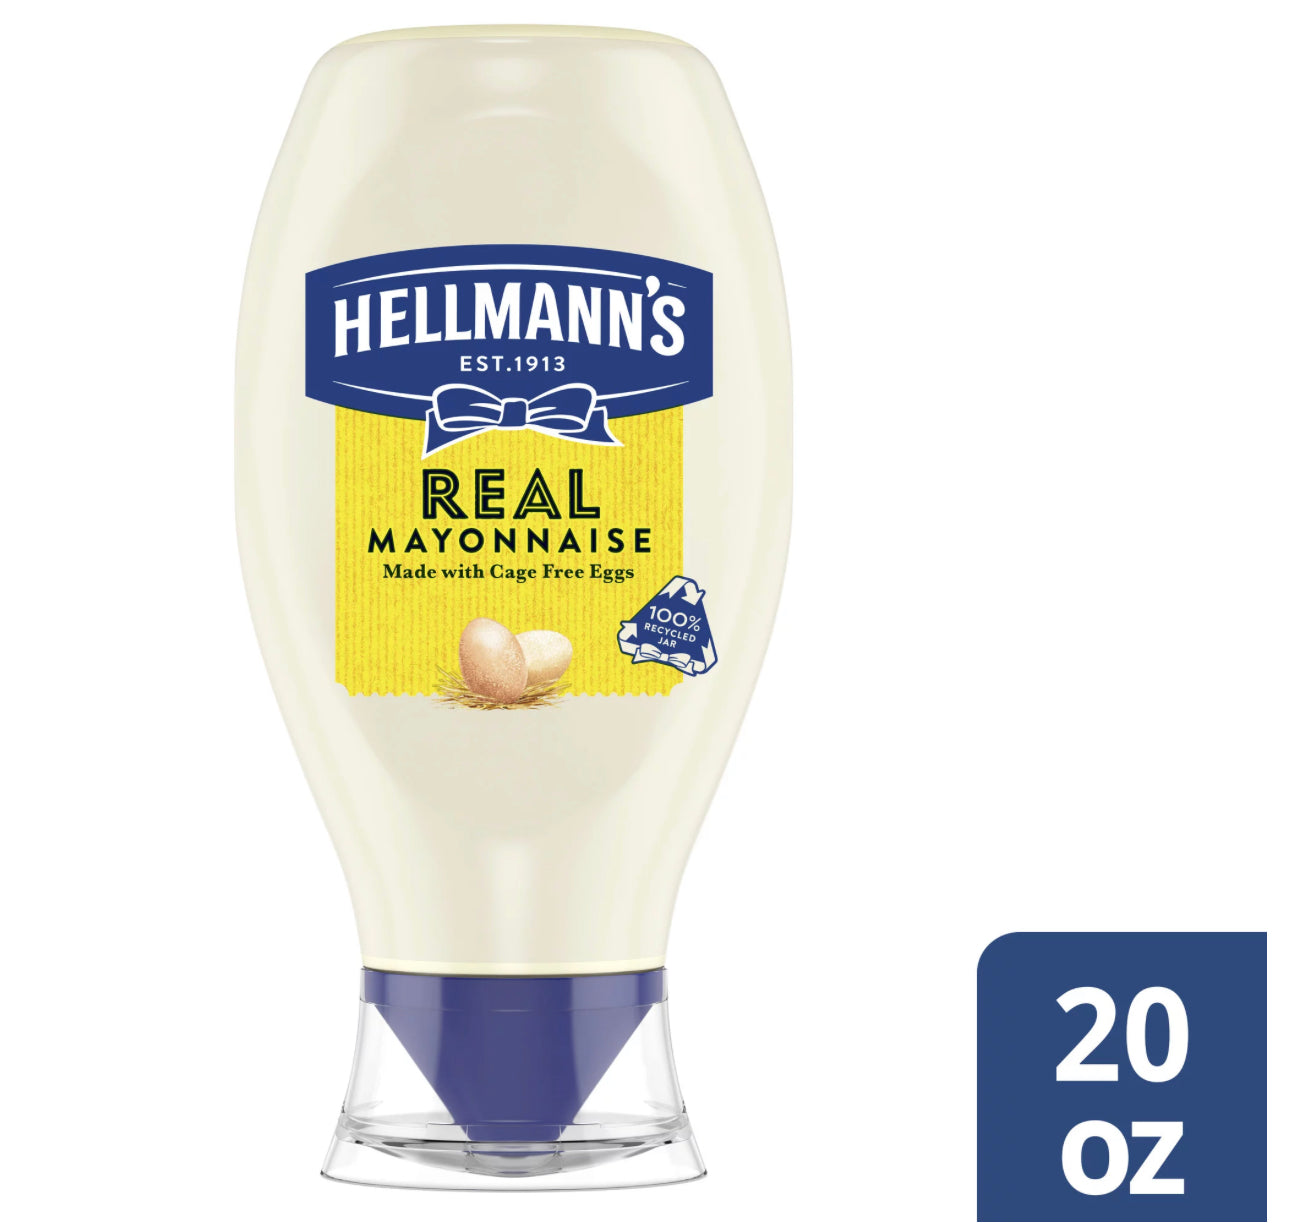 Hellmann's Real Mayonnaise 20oz